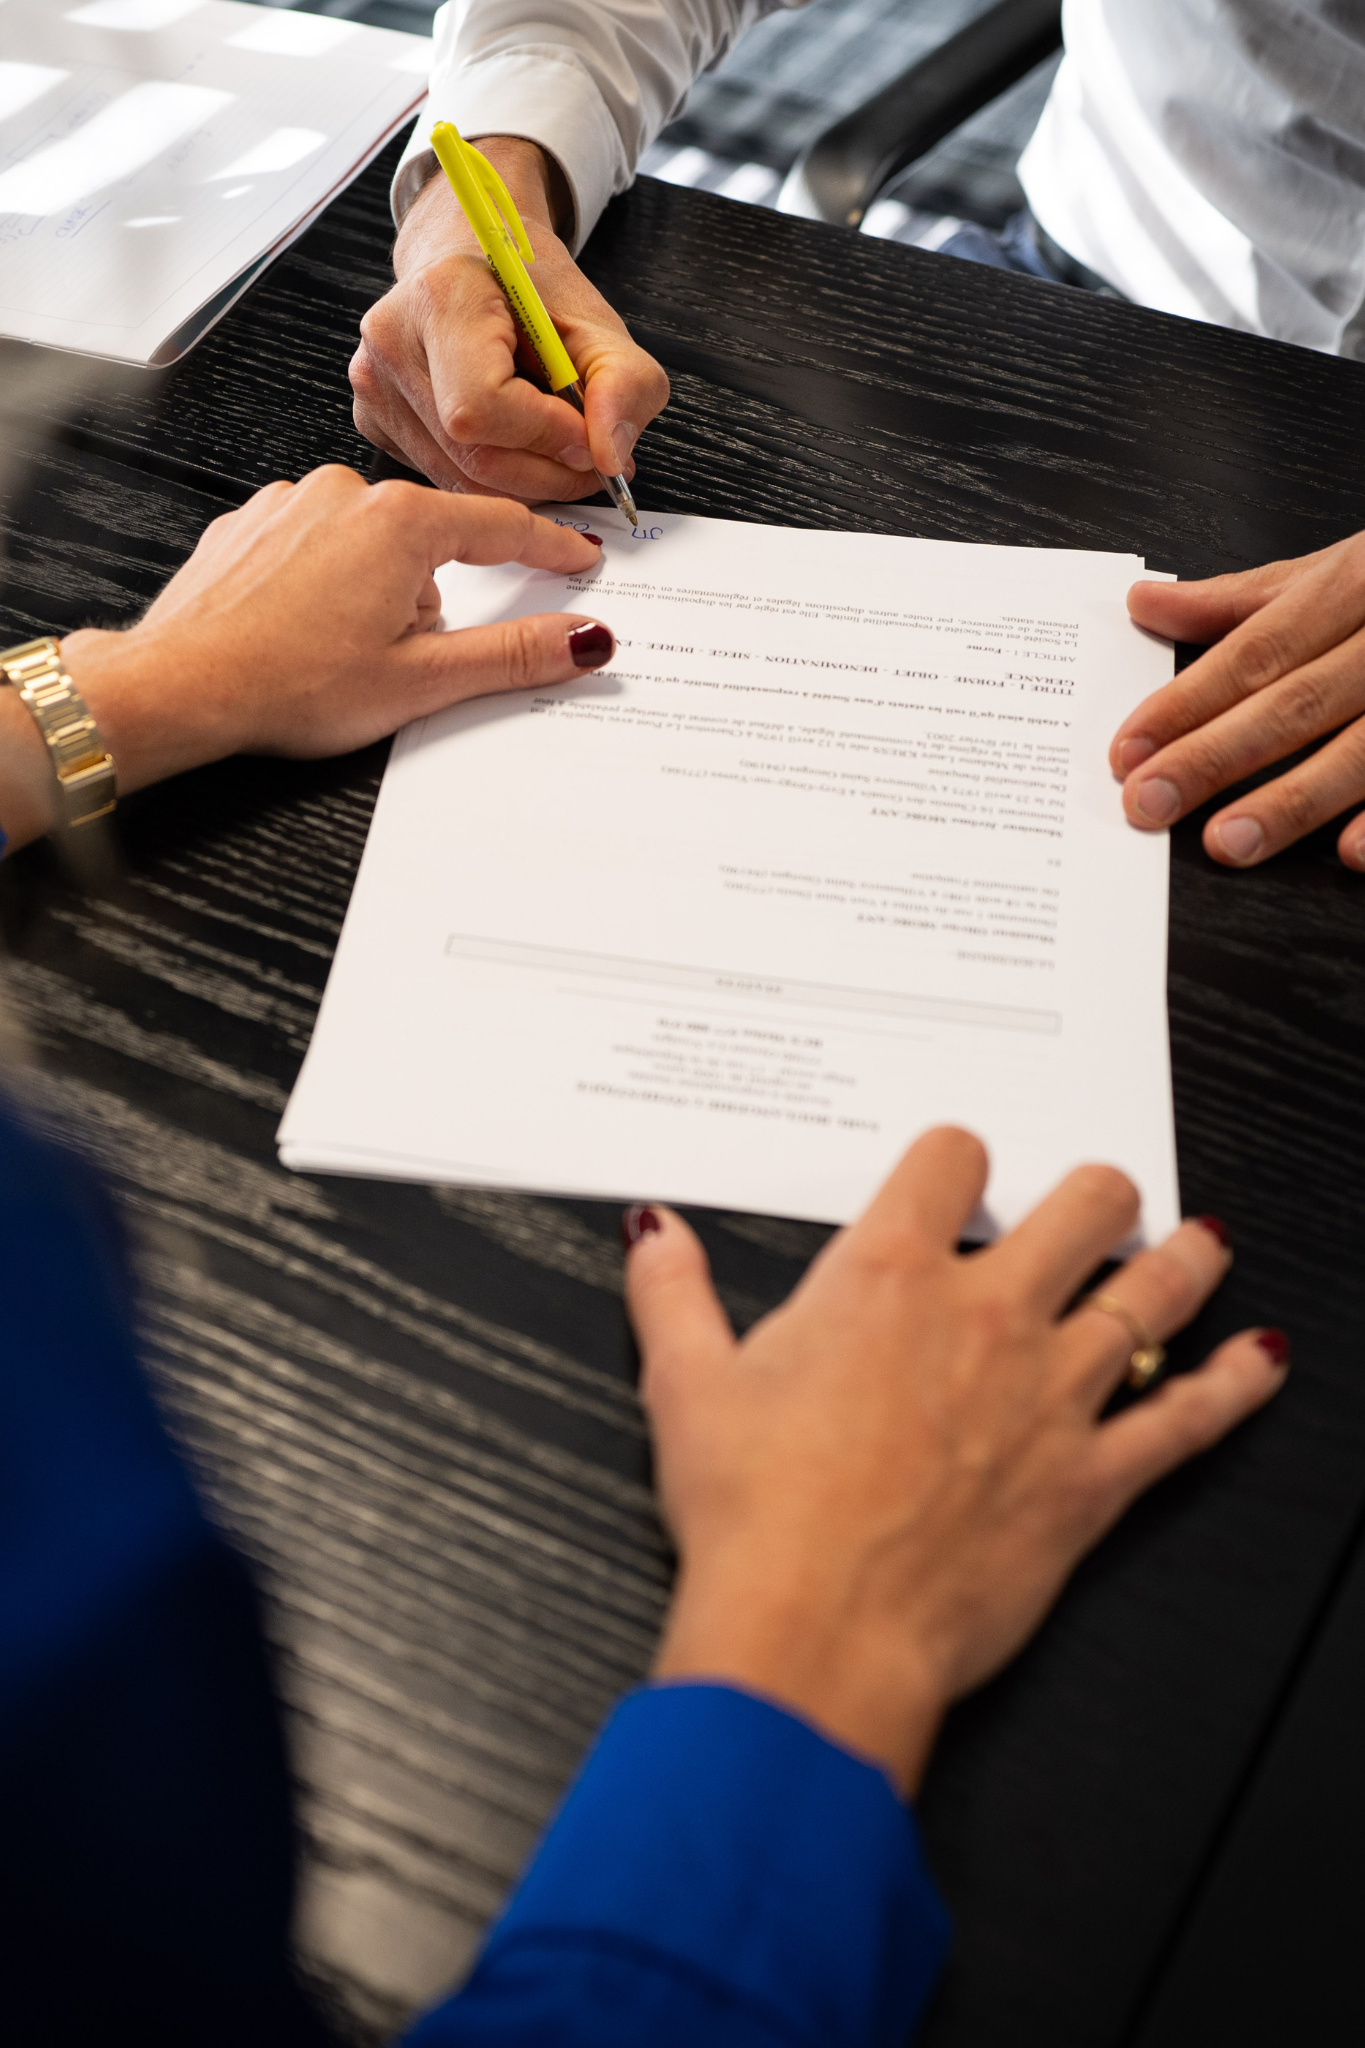 Client et expert comptable de Kodex signant un contrat important, détail des mains et du document, symbolisant les services fiables de gestion et d'expertise comptable à Jossigny, Val d'Europe.